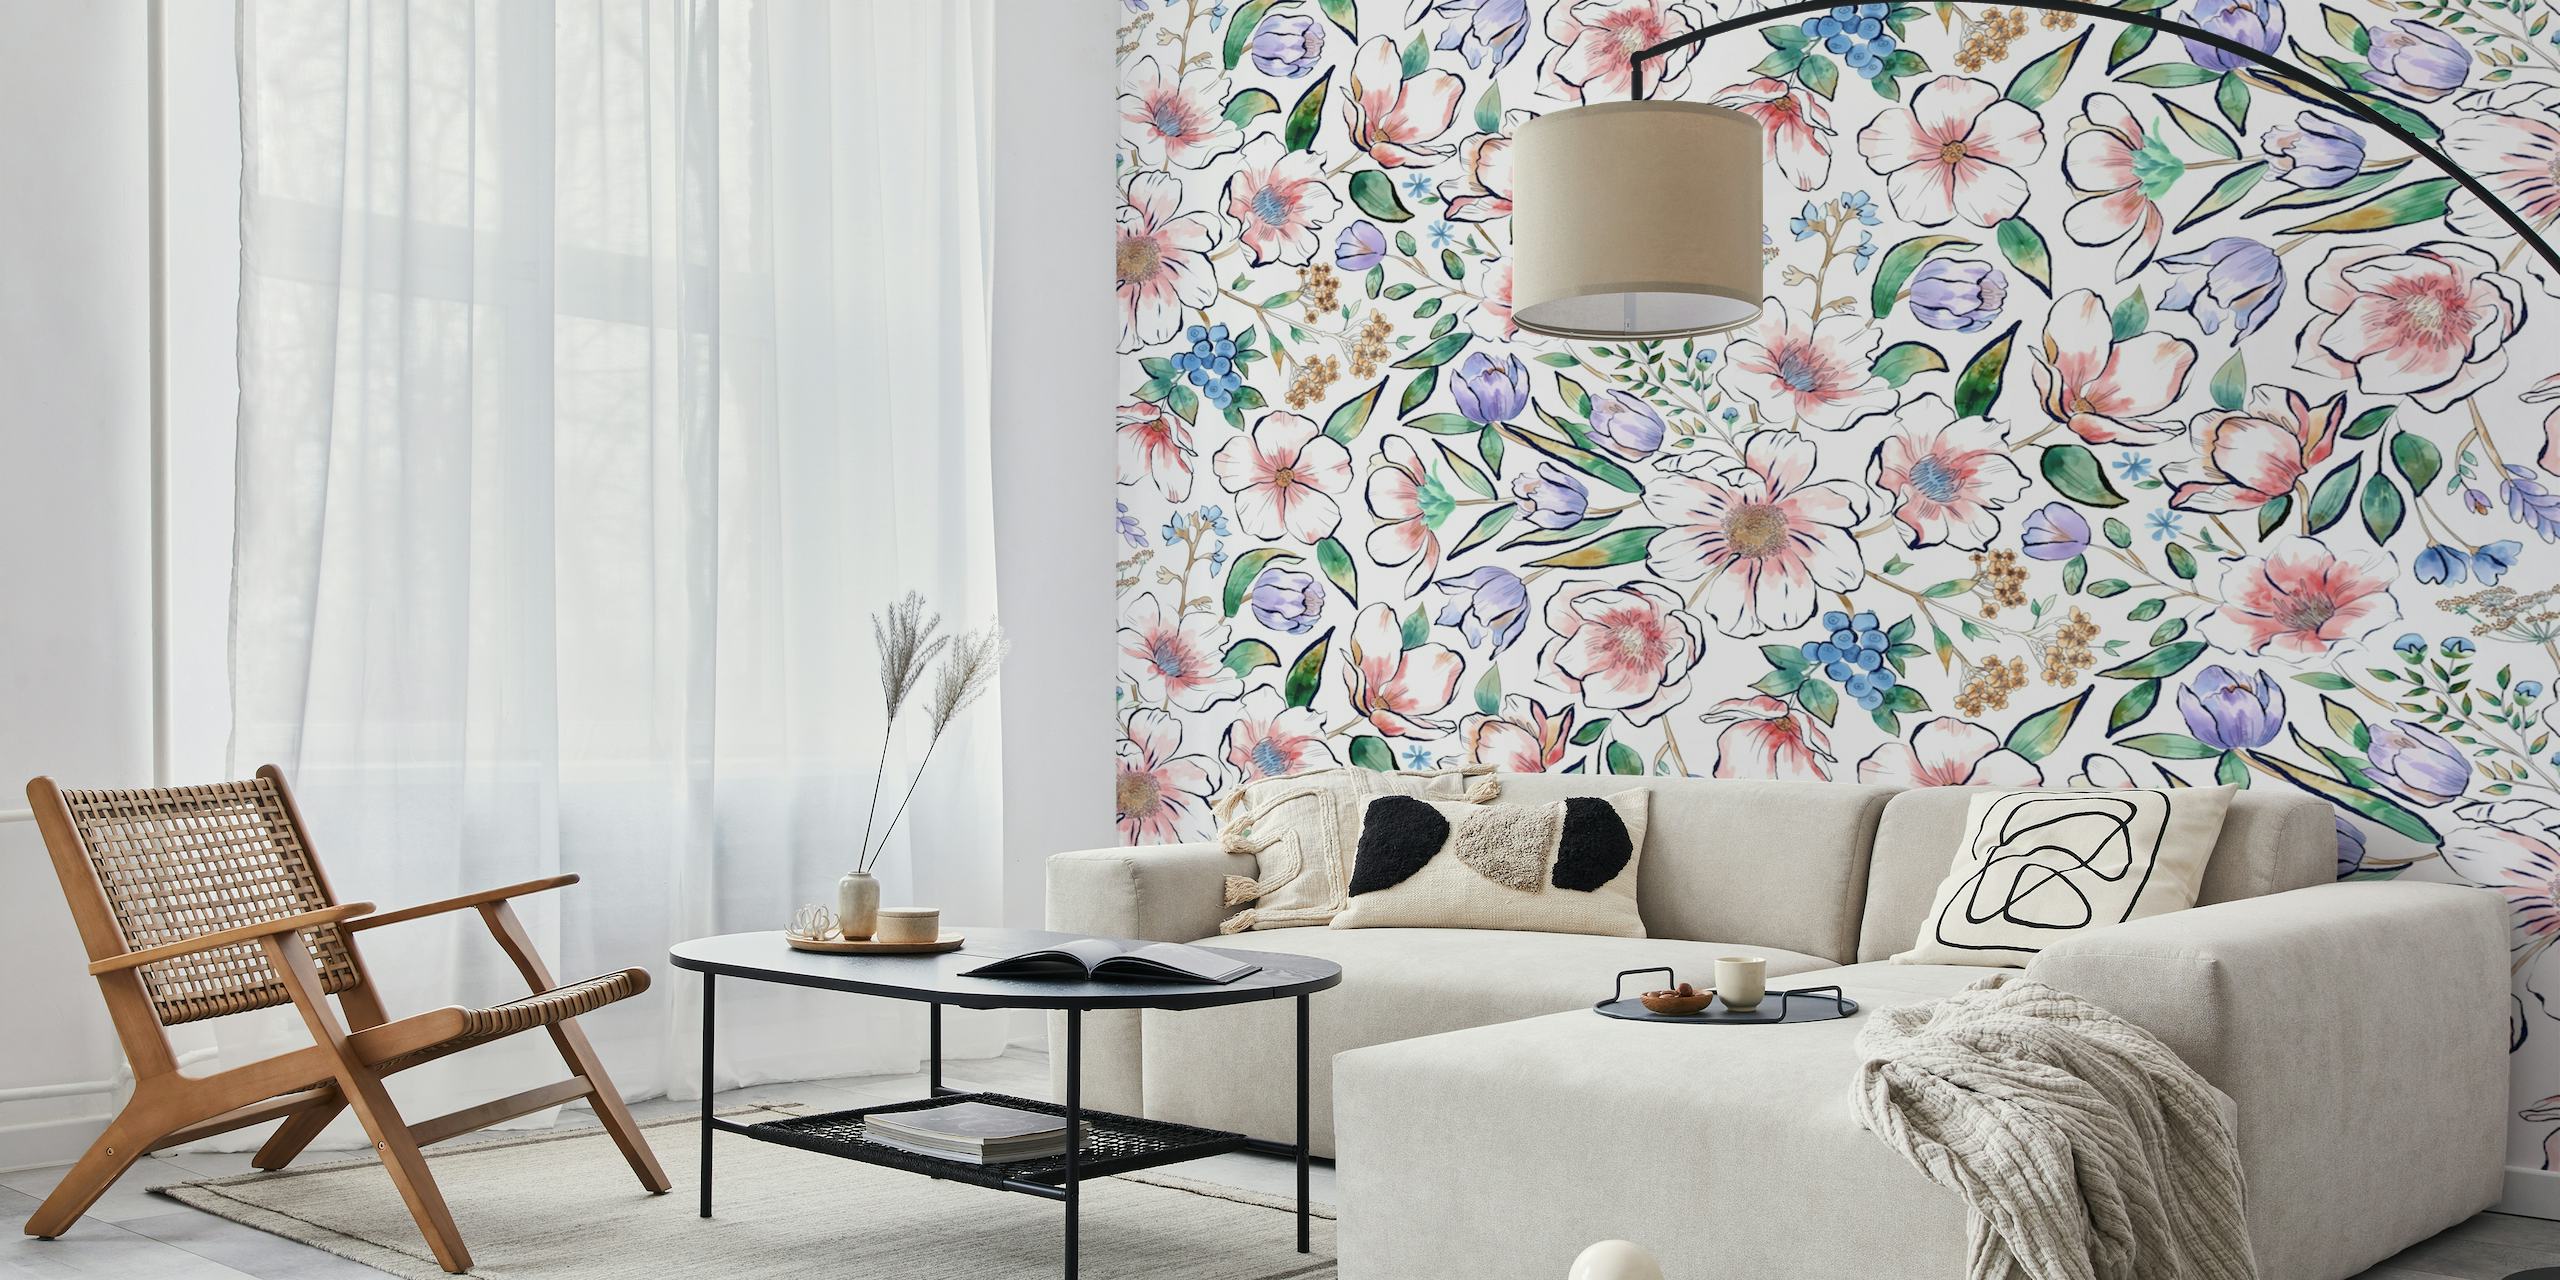 Ručno oslikana zidna slika s cvijećem u nježnim pastelnim bojama